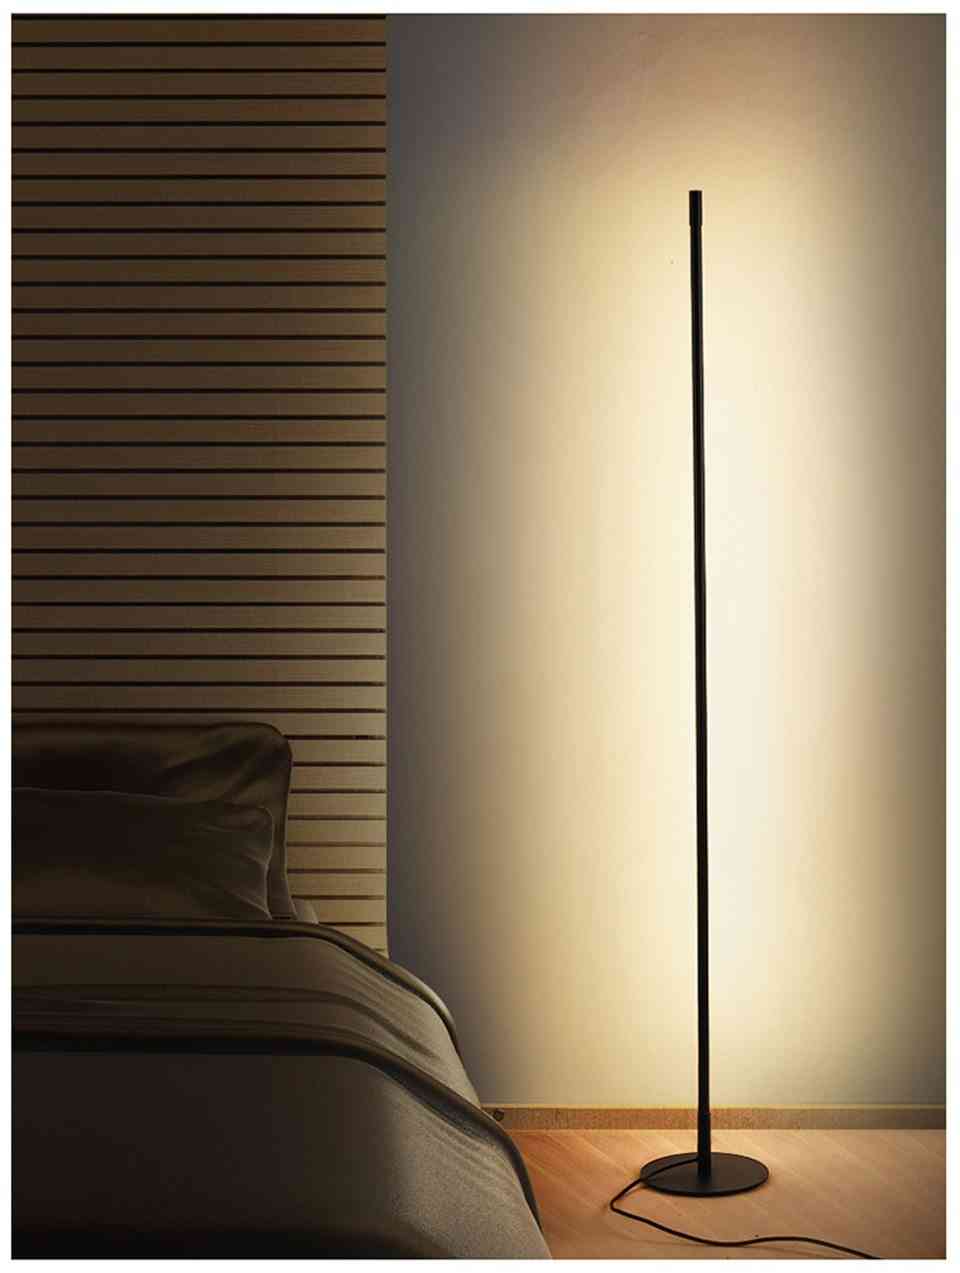 Lampă de podea minimalistă modernă